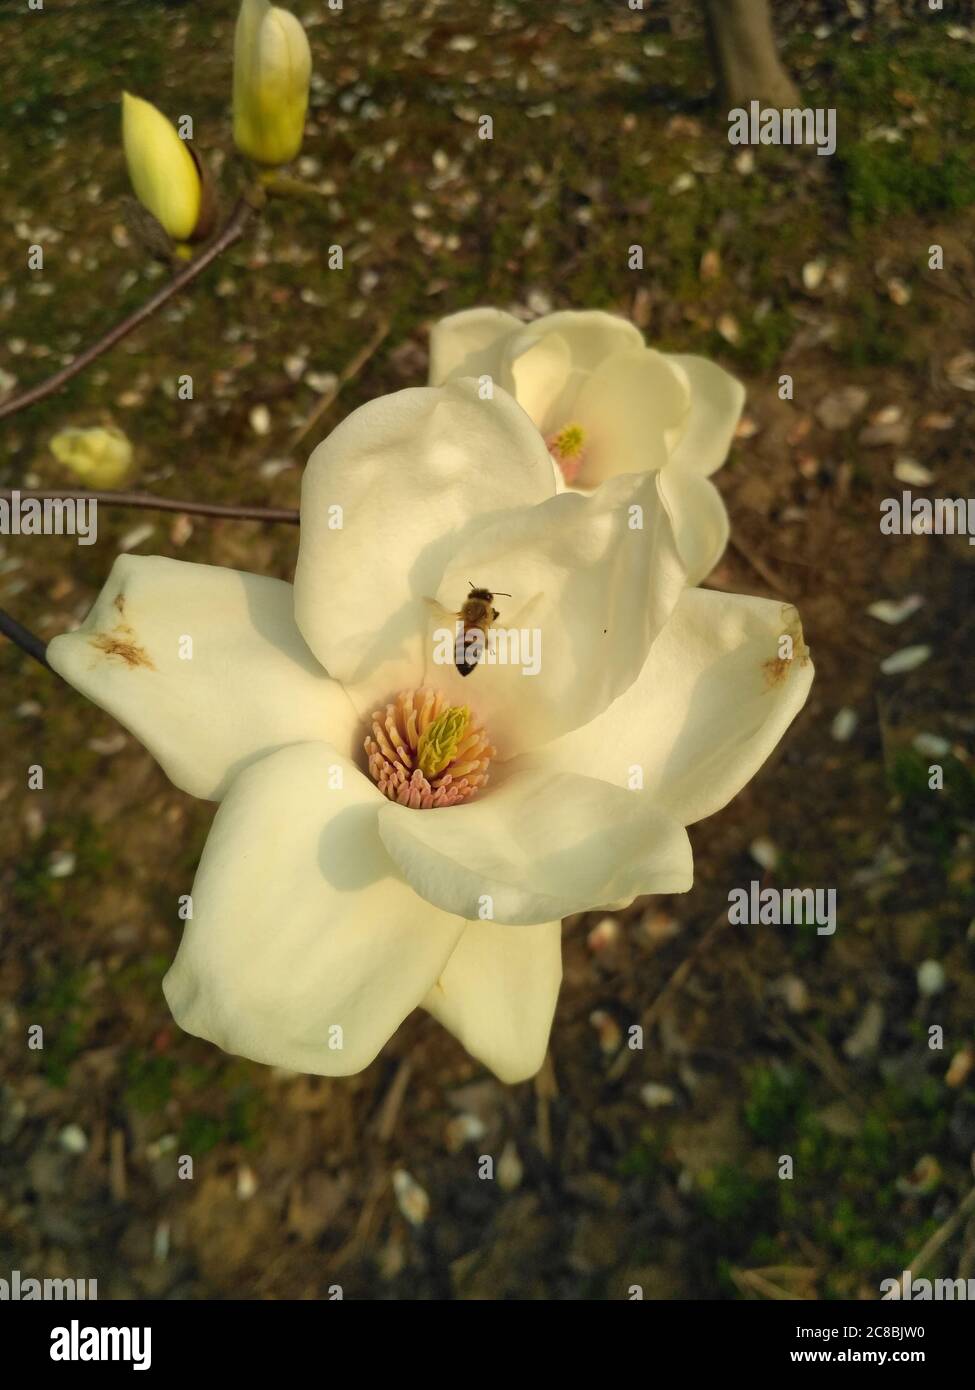 La magnolia blanca florece con estambre amarillo y pistilo en el centro; y había una abeja en el centro del estambre Foto de stock